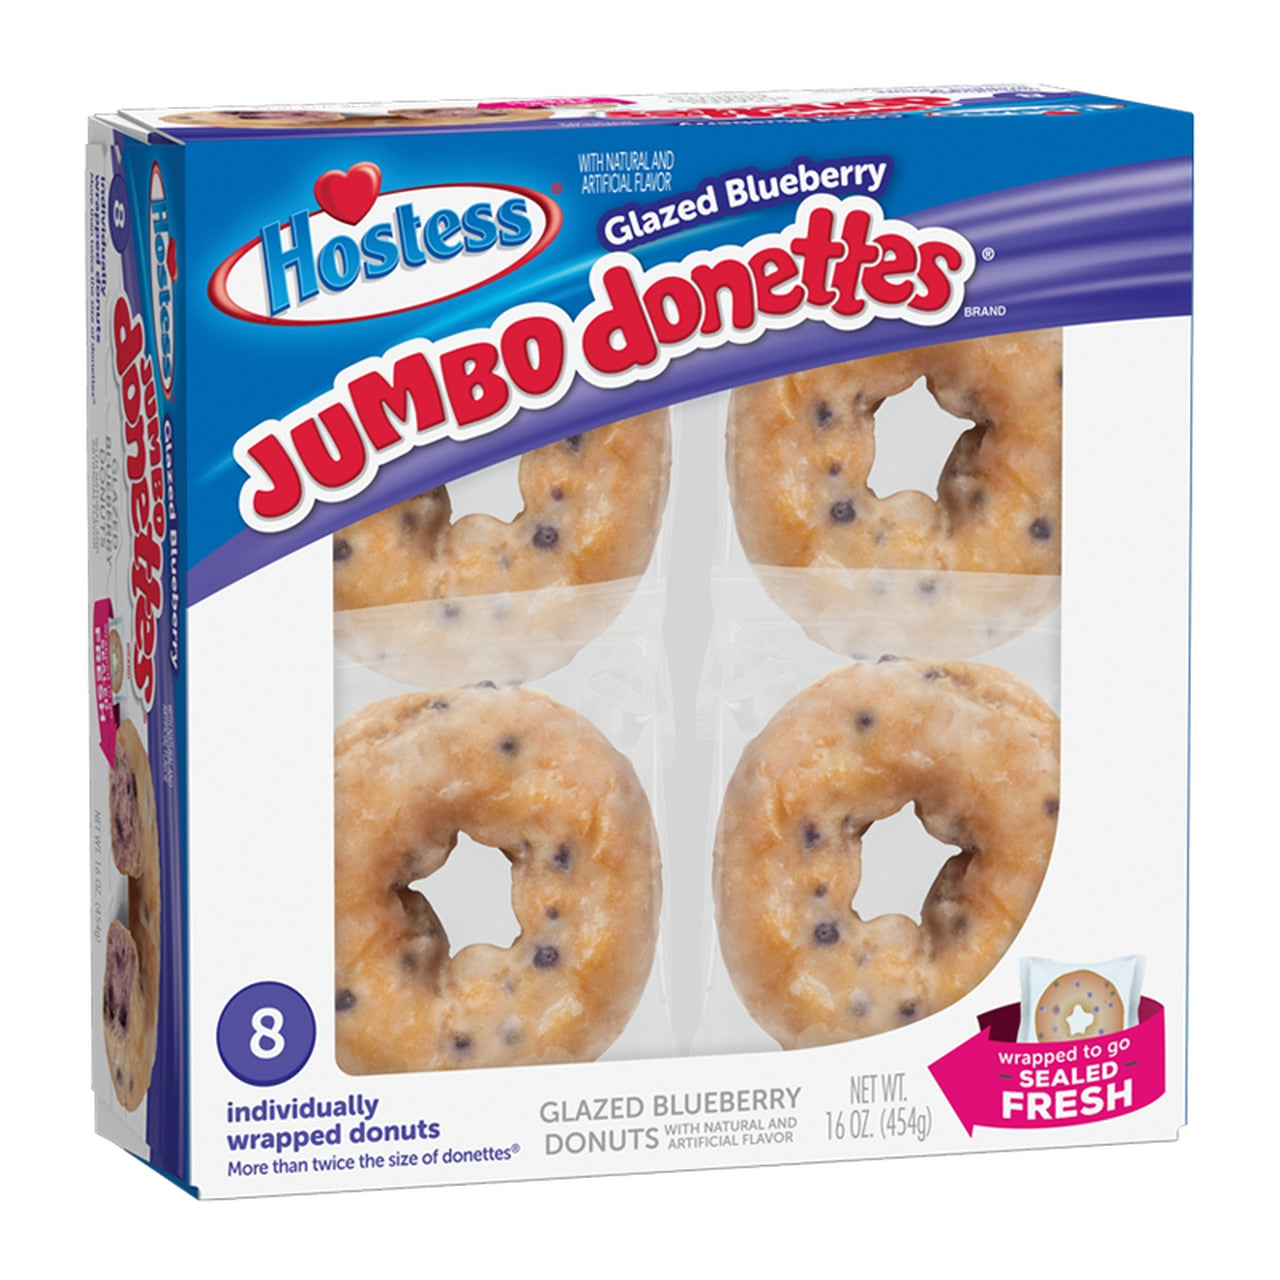 Jumbo Donettes Glazed Blueberry Donuts - 8pk